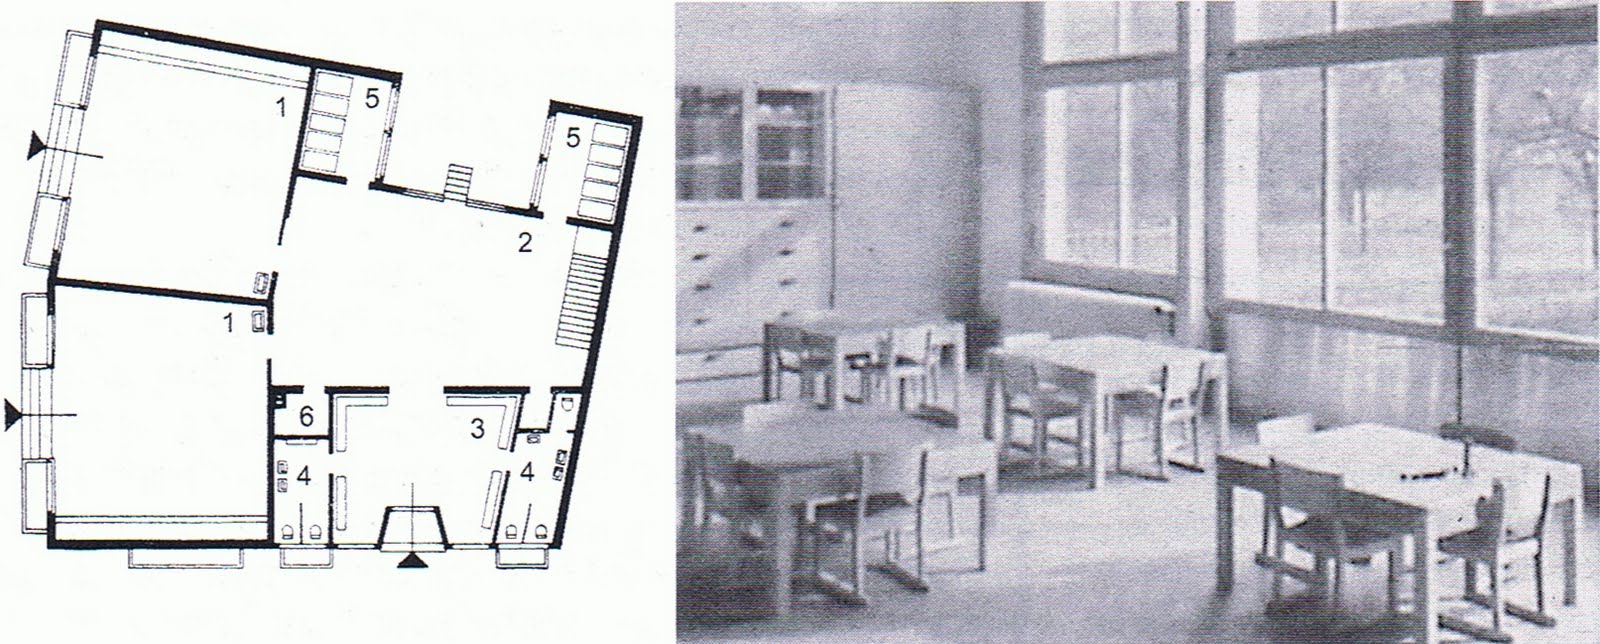 Nursery School designed by Hans Leuzinger, Zurich 1934. Image taken 